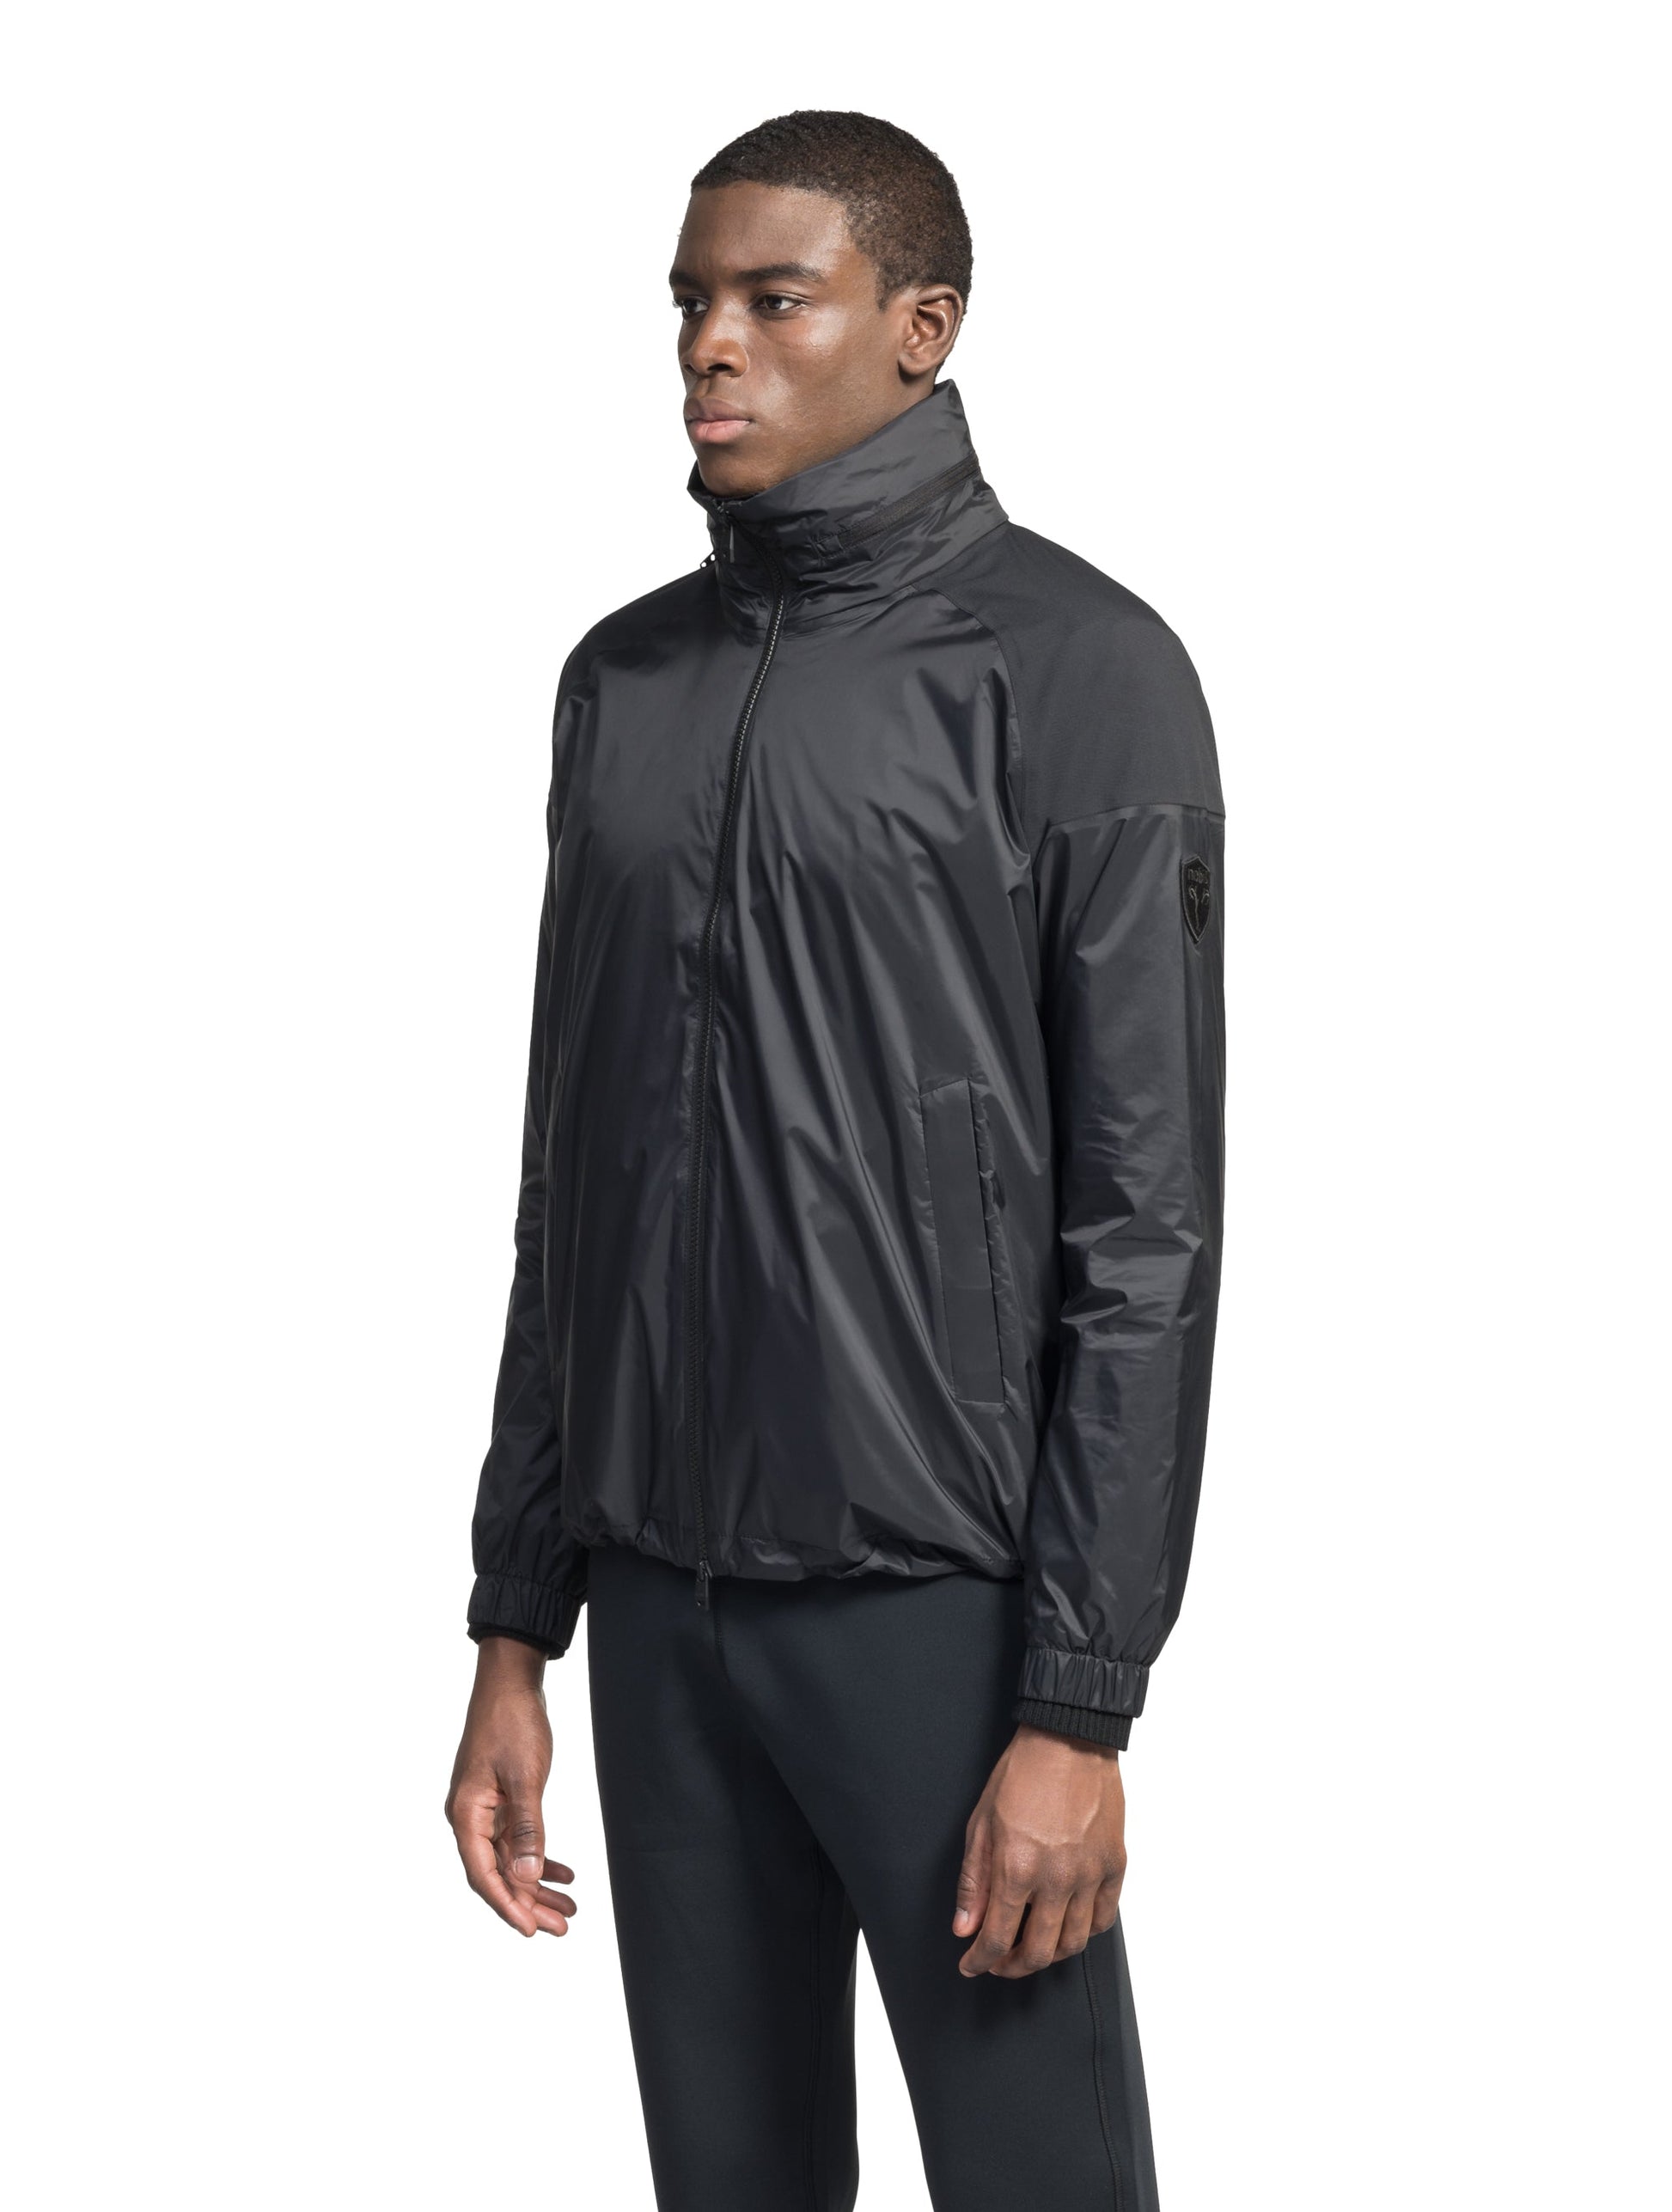 Men's hip length waterproof jacket with tuckable hood and 2-way zipper in Black